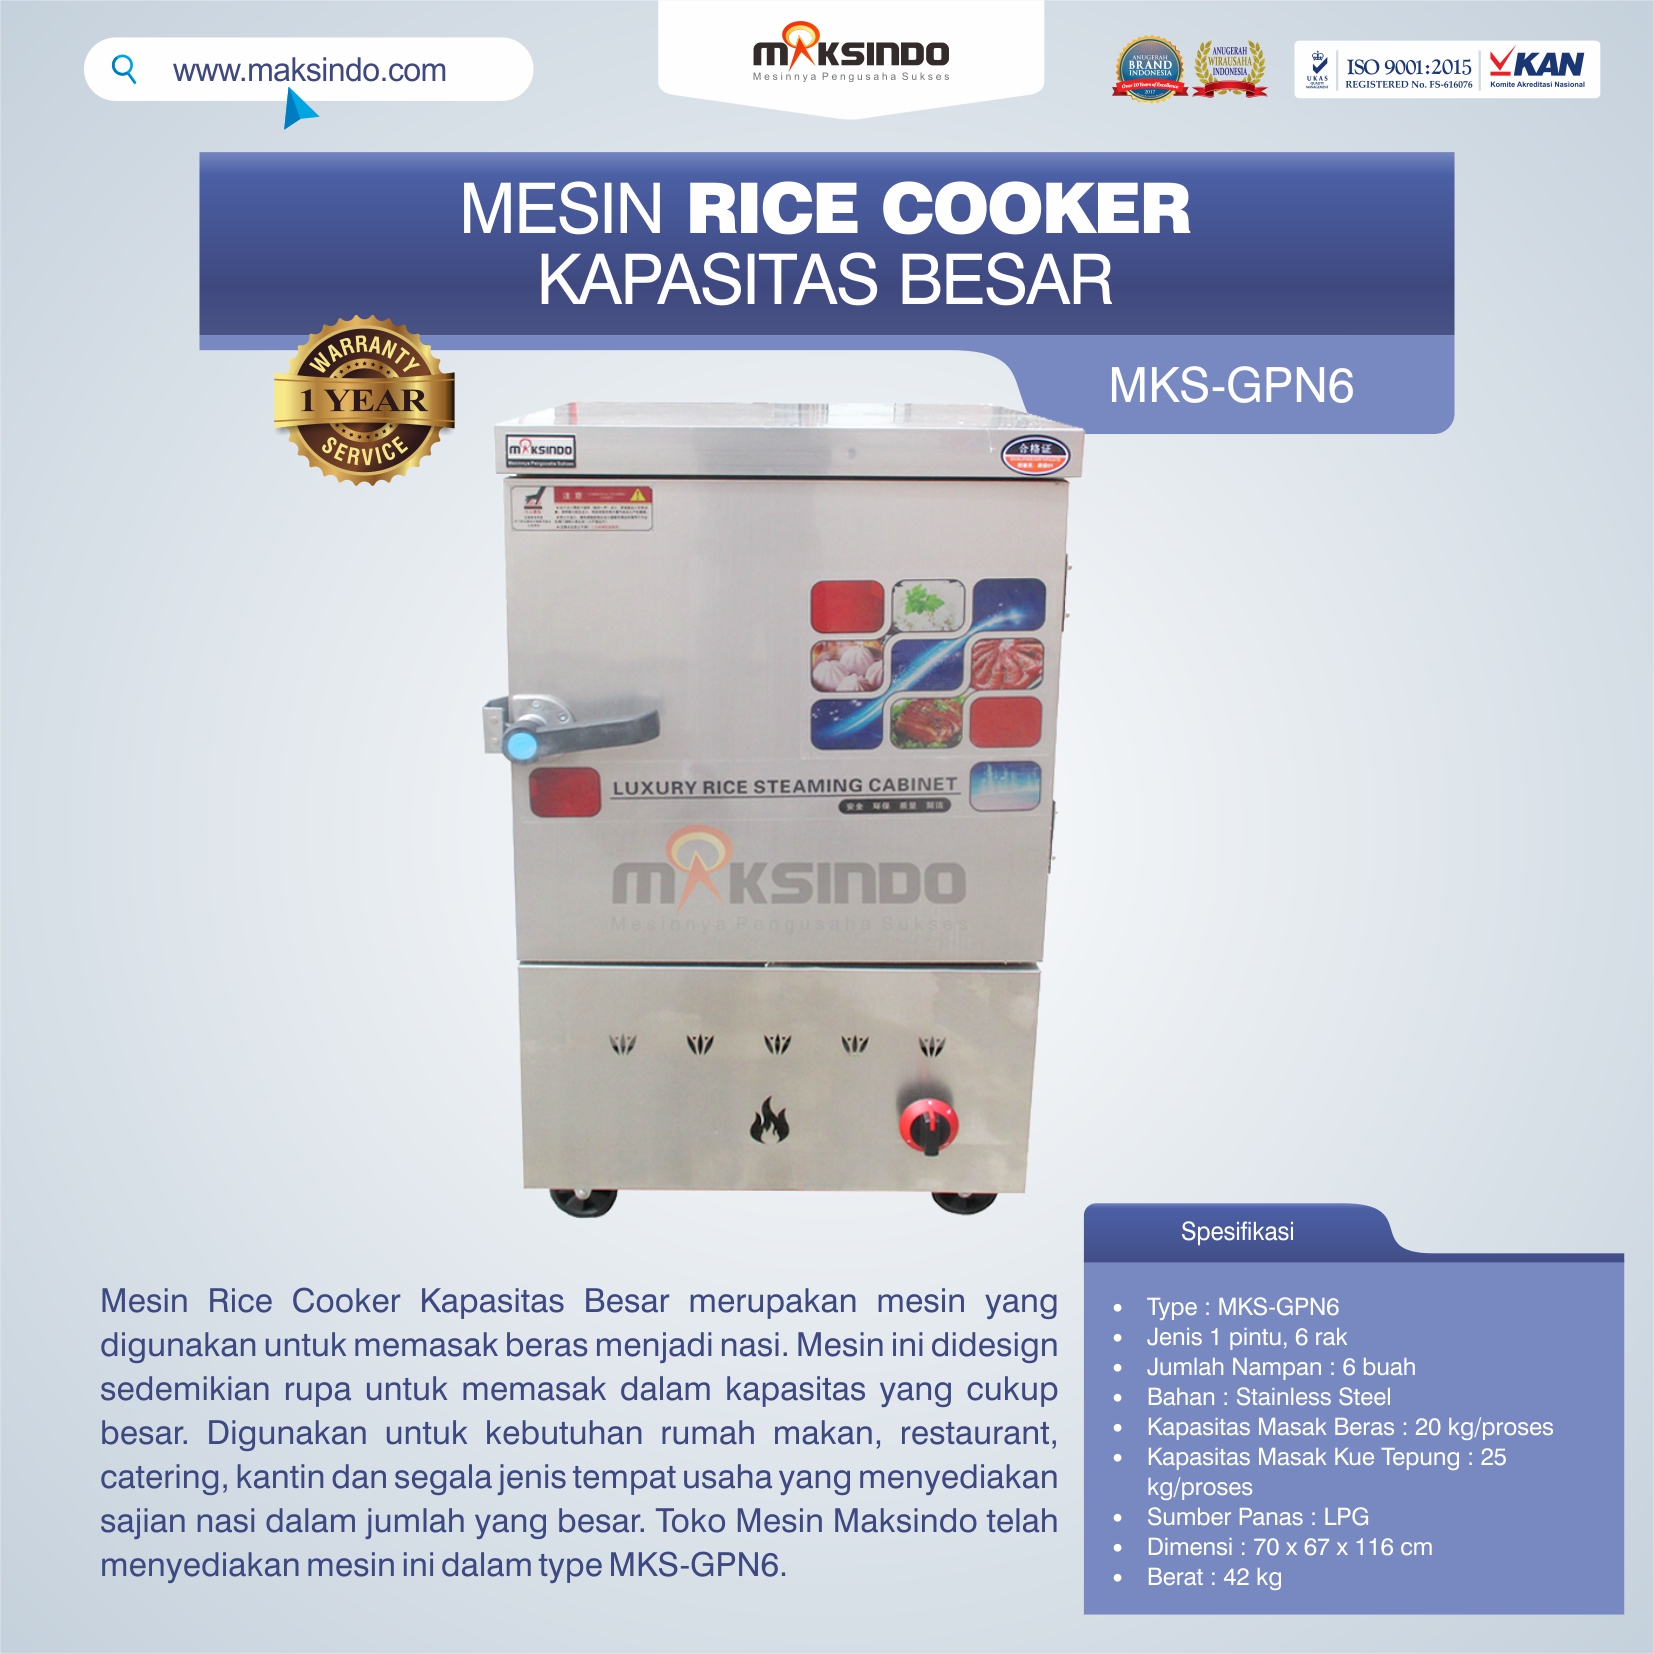 Jual Mesin Rice Cooker Kapasitas Besar MKS-GPN6 di Bekasi